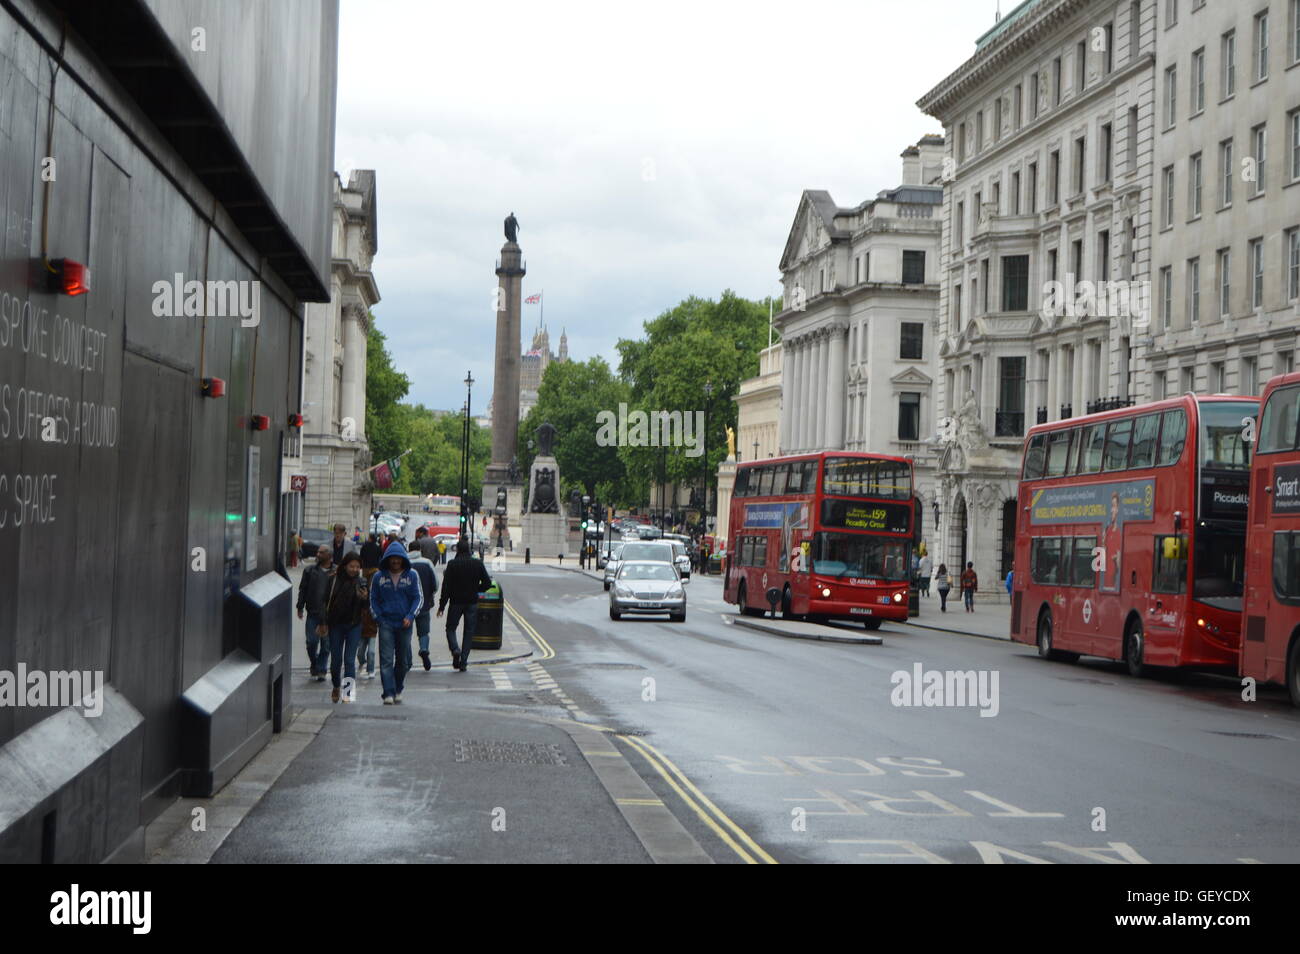 London Street view con la caratteristica London double decker bus rosso. Foto Stock